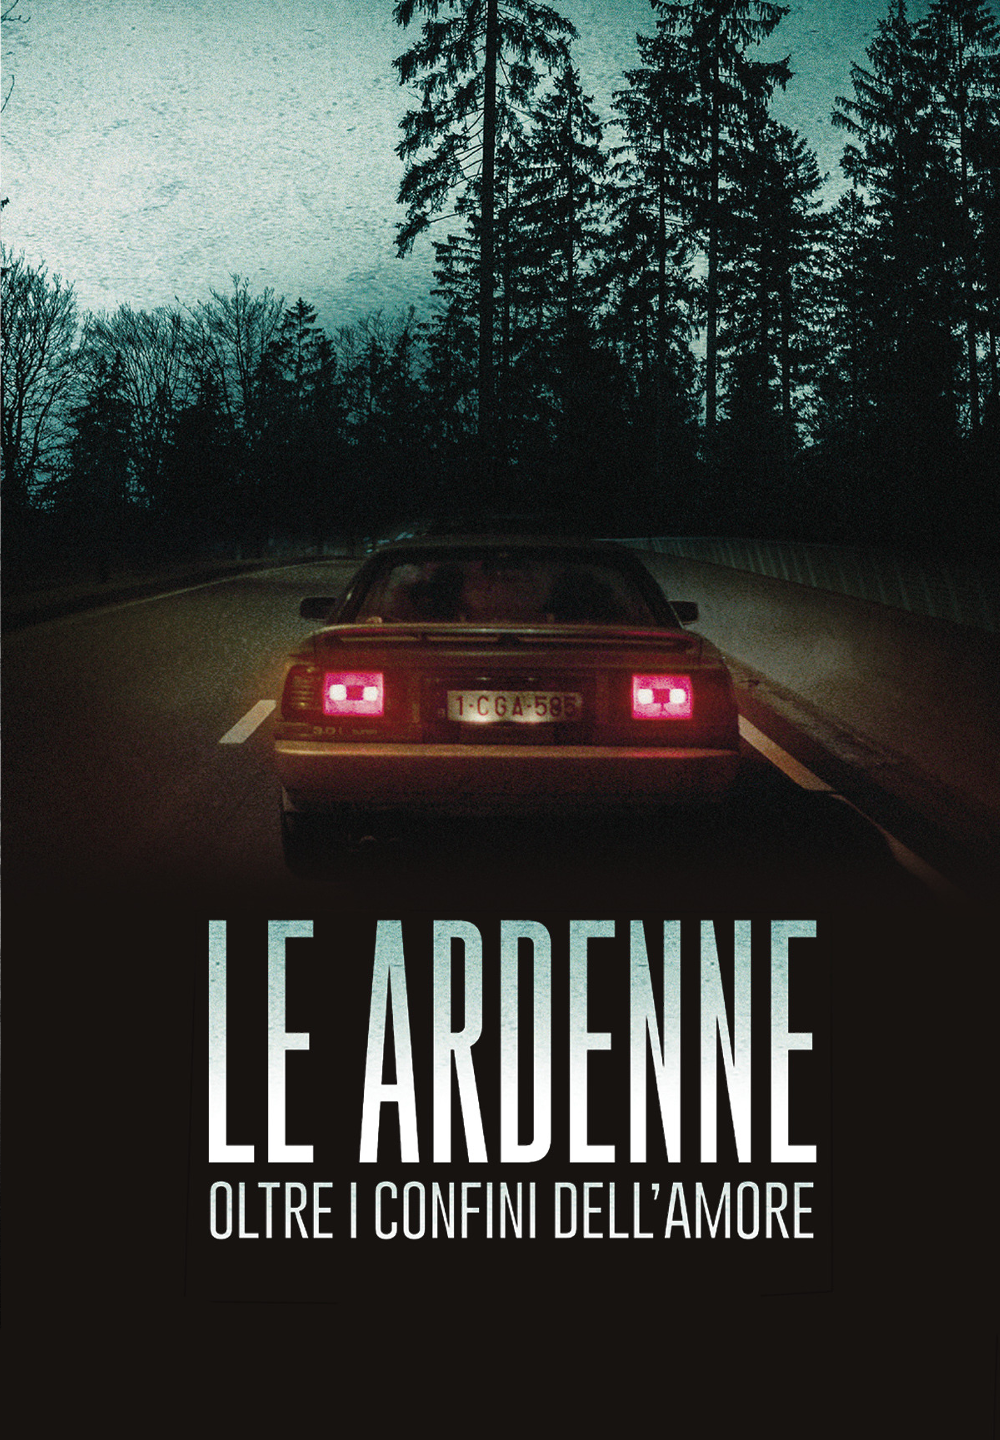 Le Ardenne – Oltre i confini dell’amore [HD] (2017)